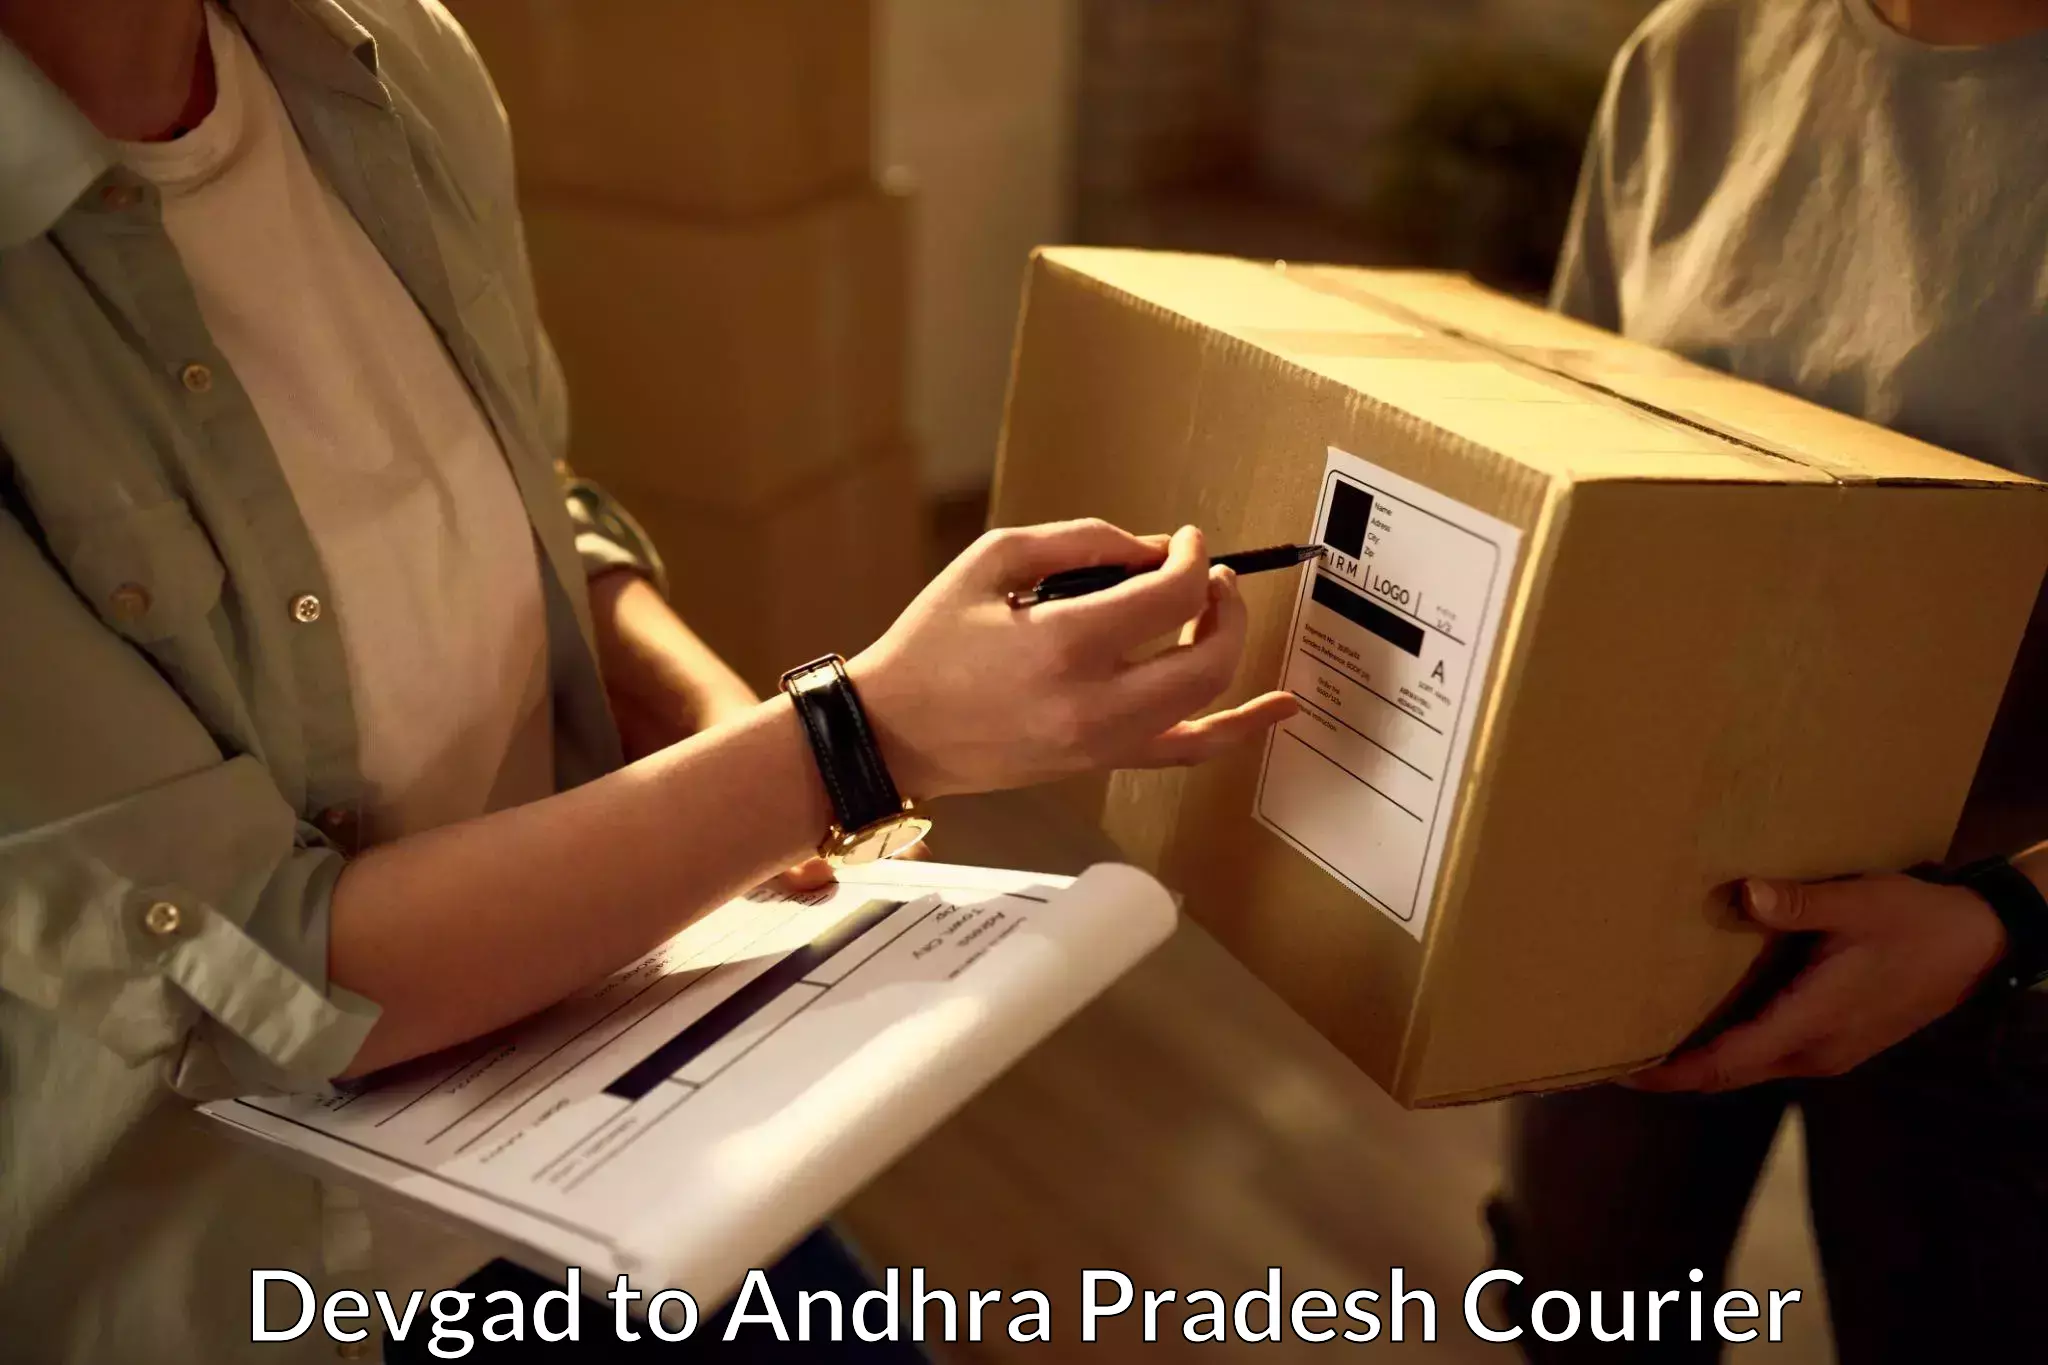 High-speed parcel service Devgad to Devarapalli